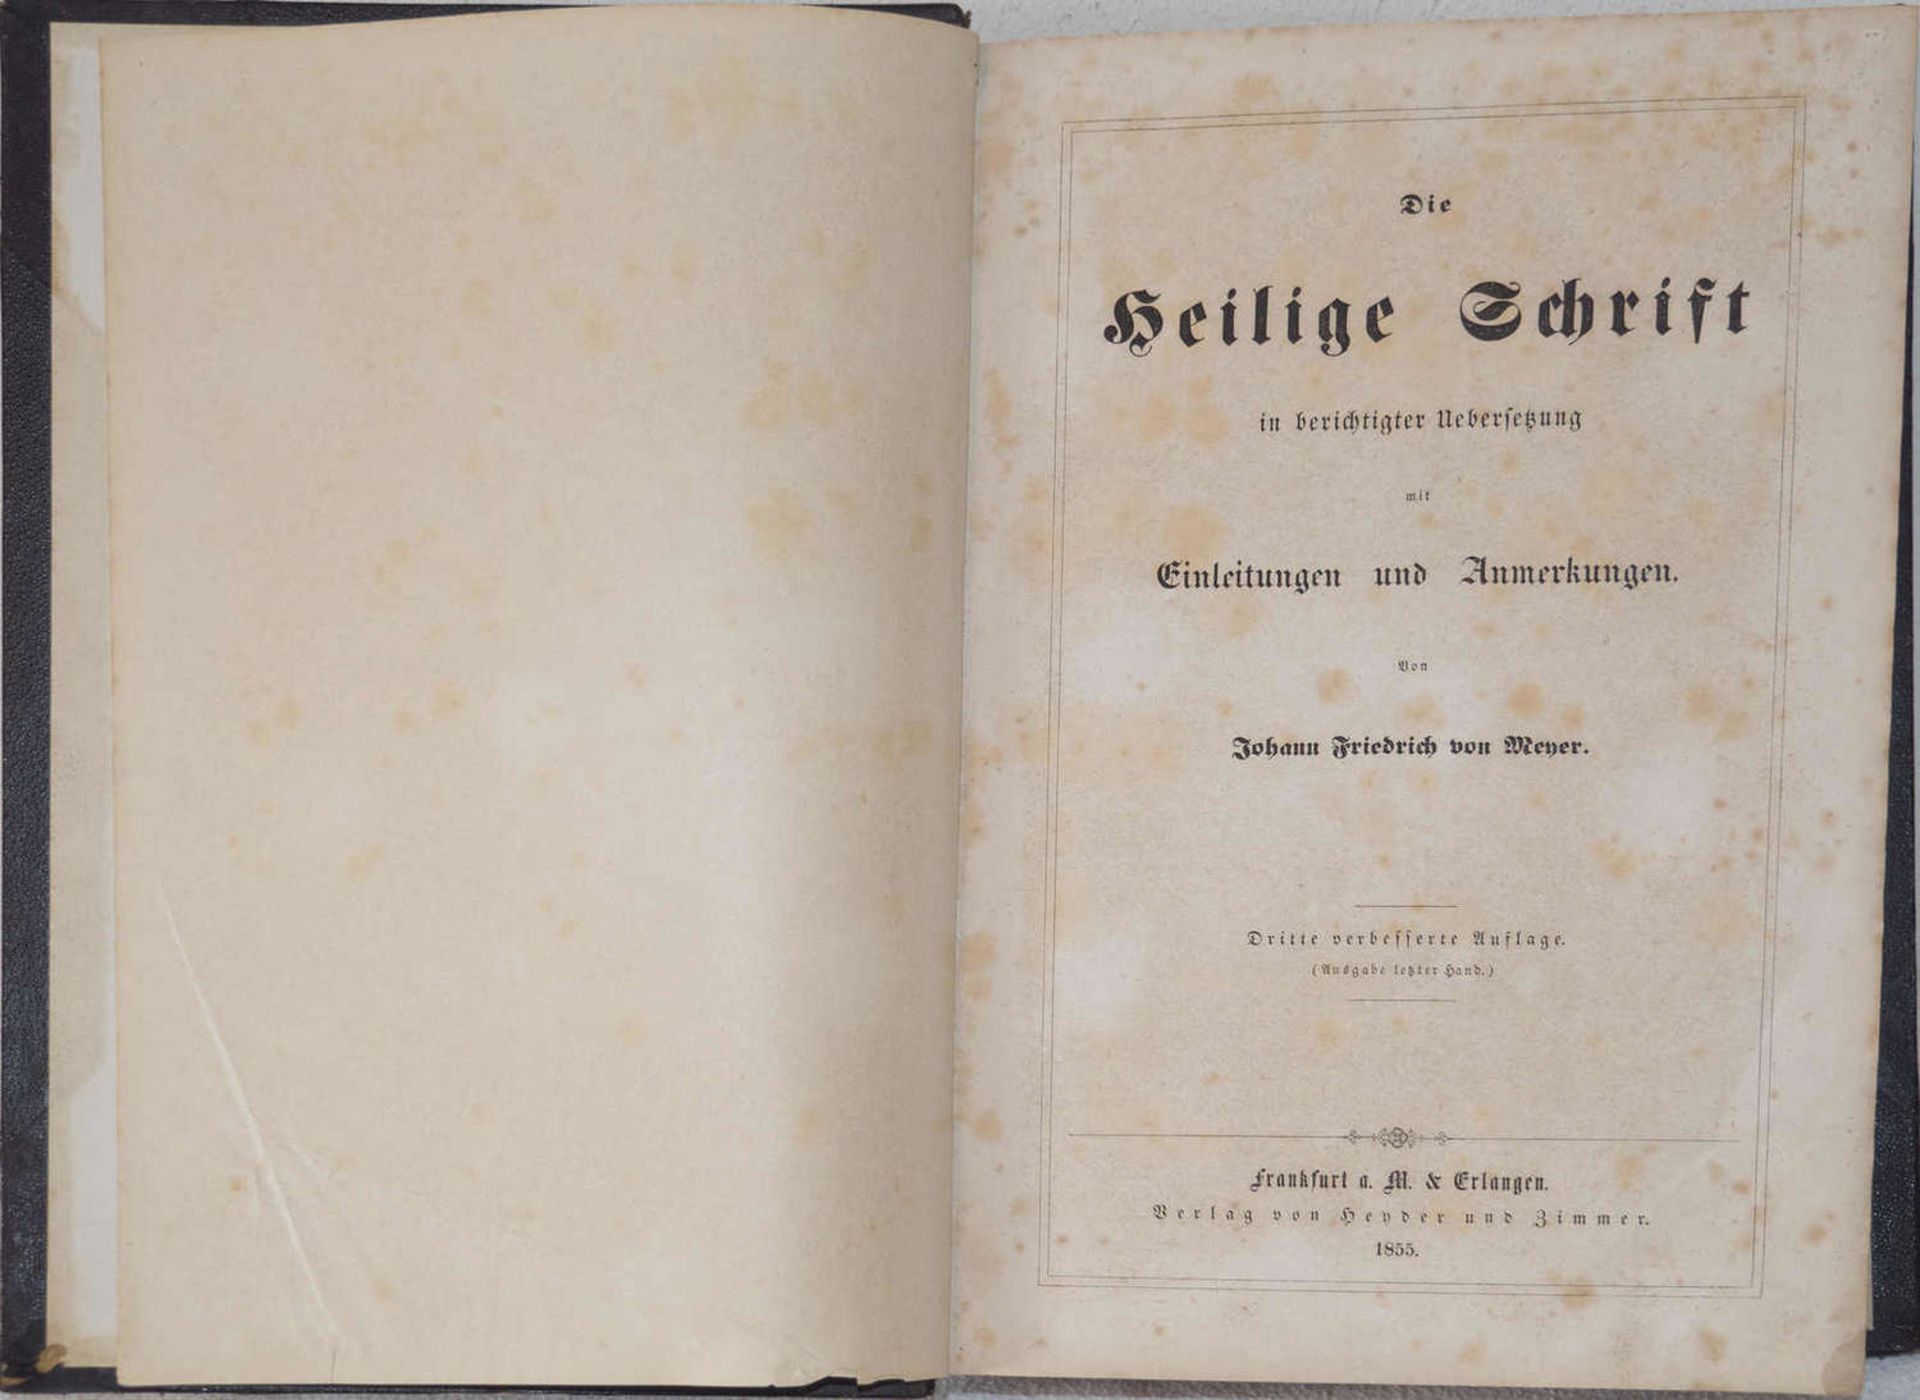 Die heilige Schrift mit Anmerkungen von Johann Friedrich von Meyer 1855. Dazu Allgemeines - Image 4 of 4